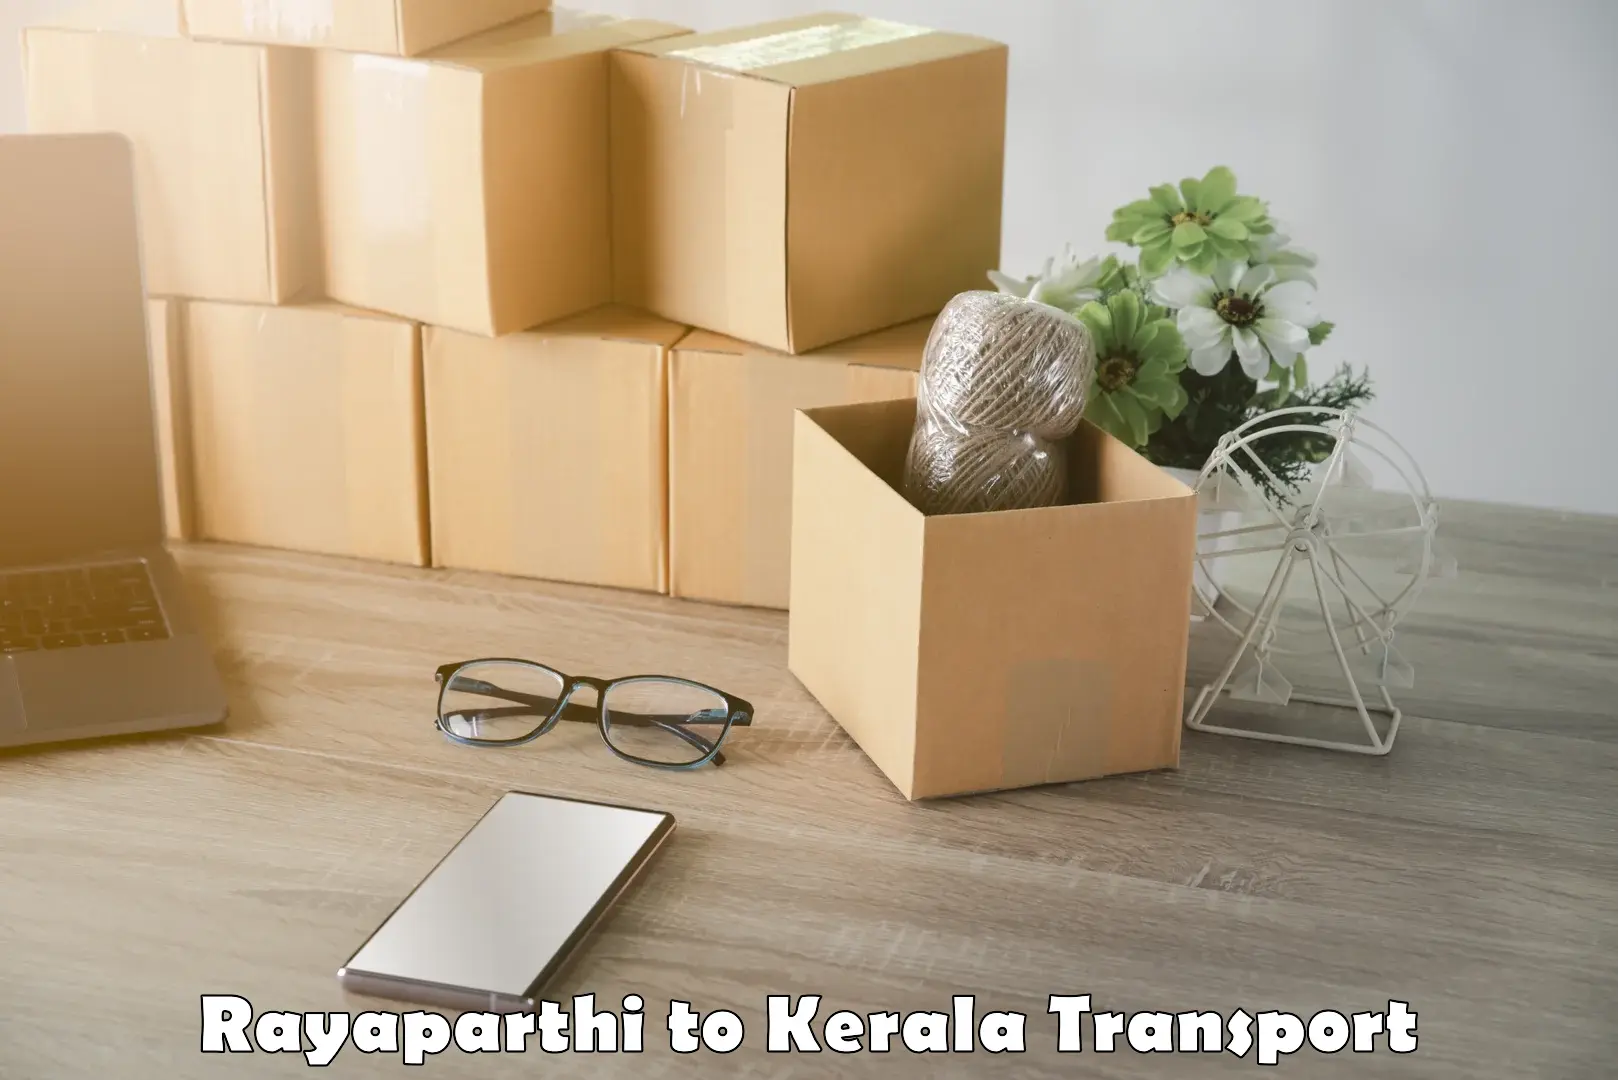 Luggage transport services Rayaparthi to Nedumkandam